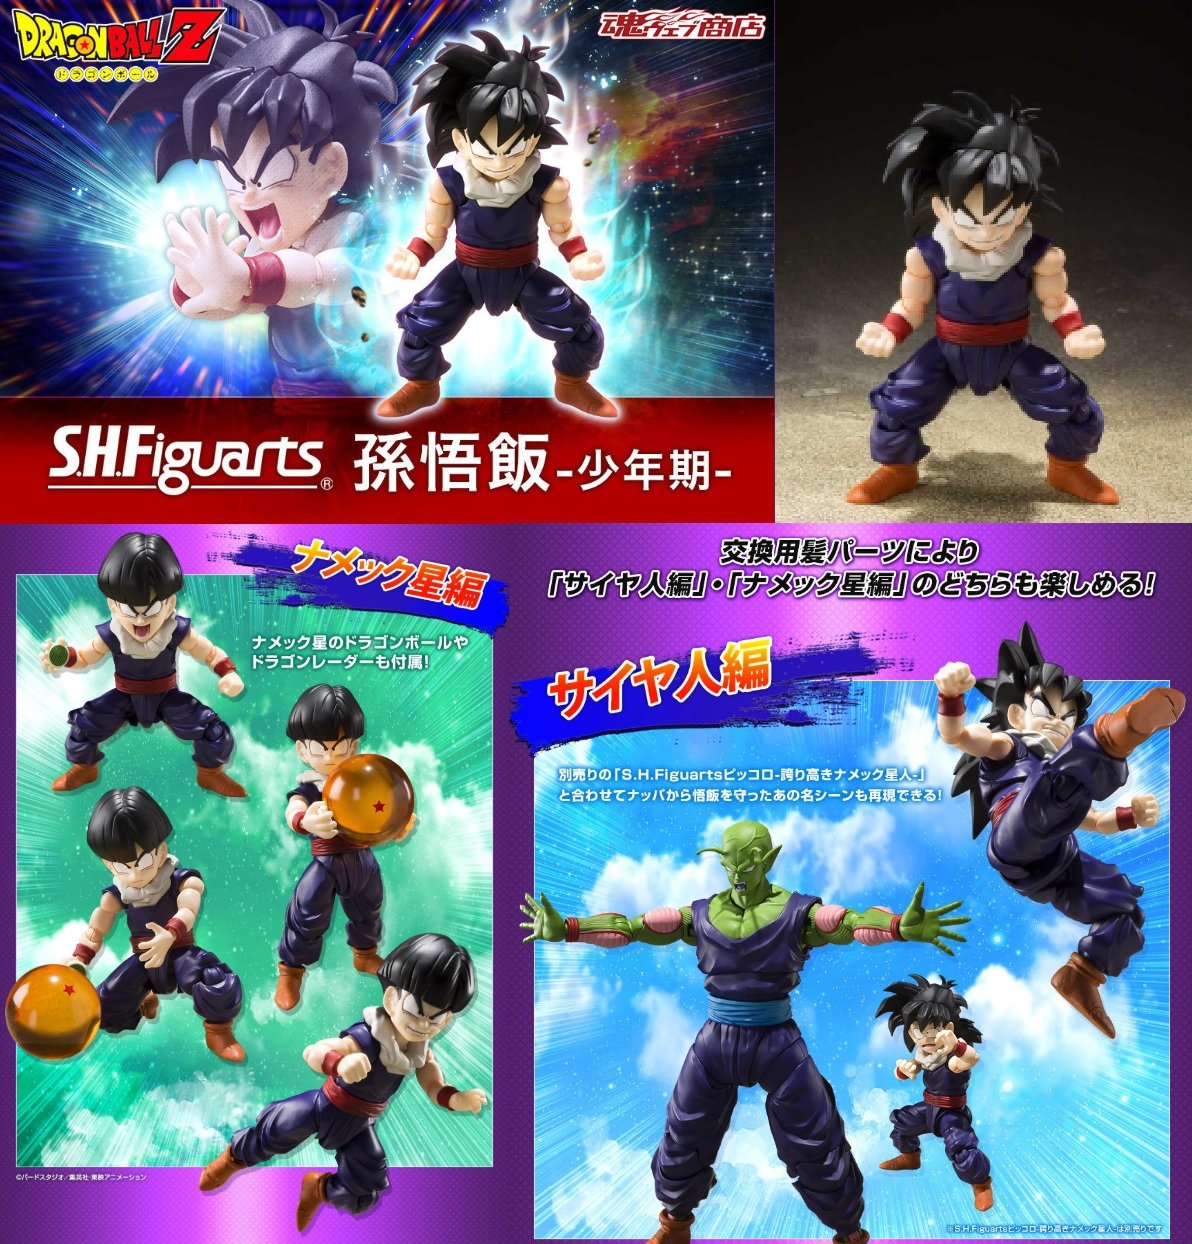 龍珠SHF 孫悟飯-少年期- | S.H.Figuarts Action Figure | Bandai